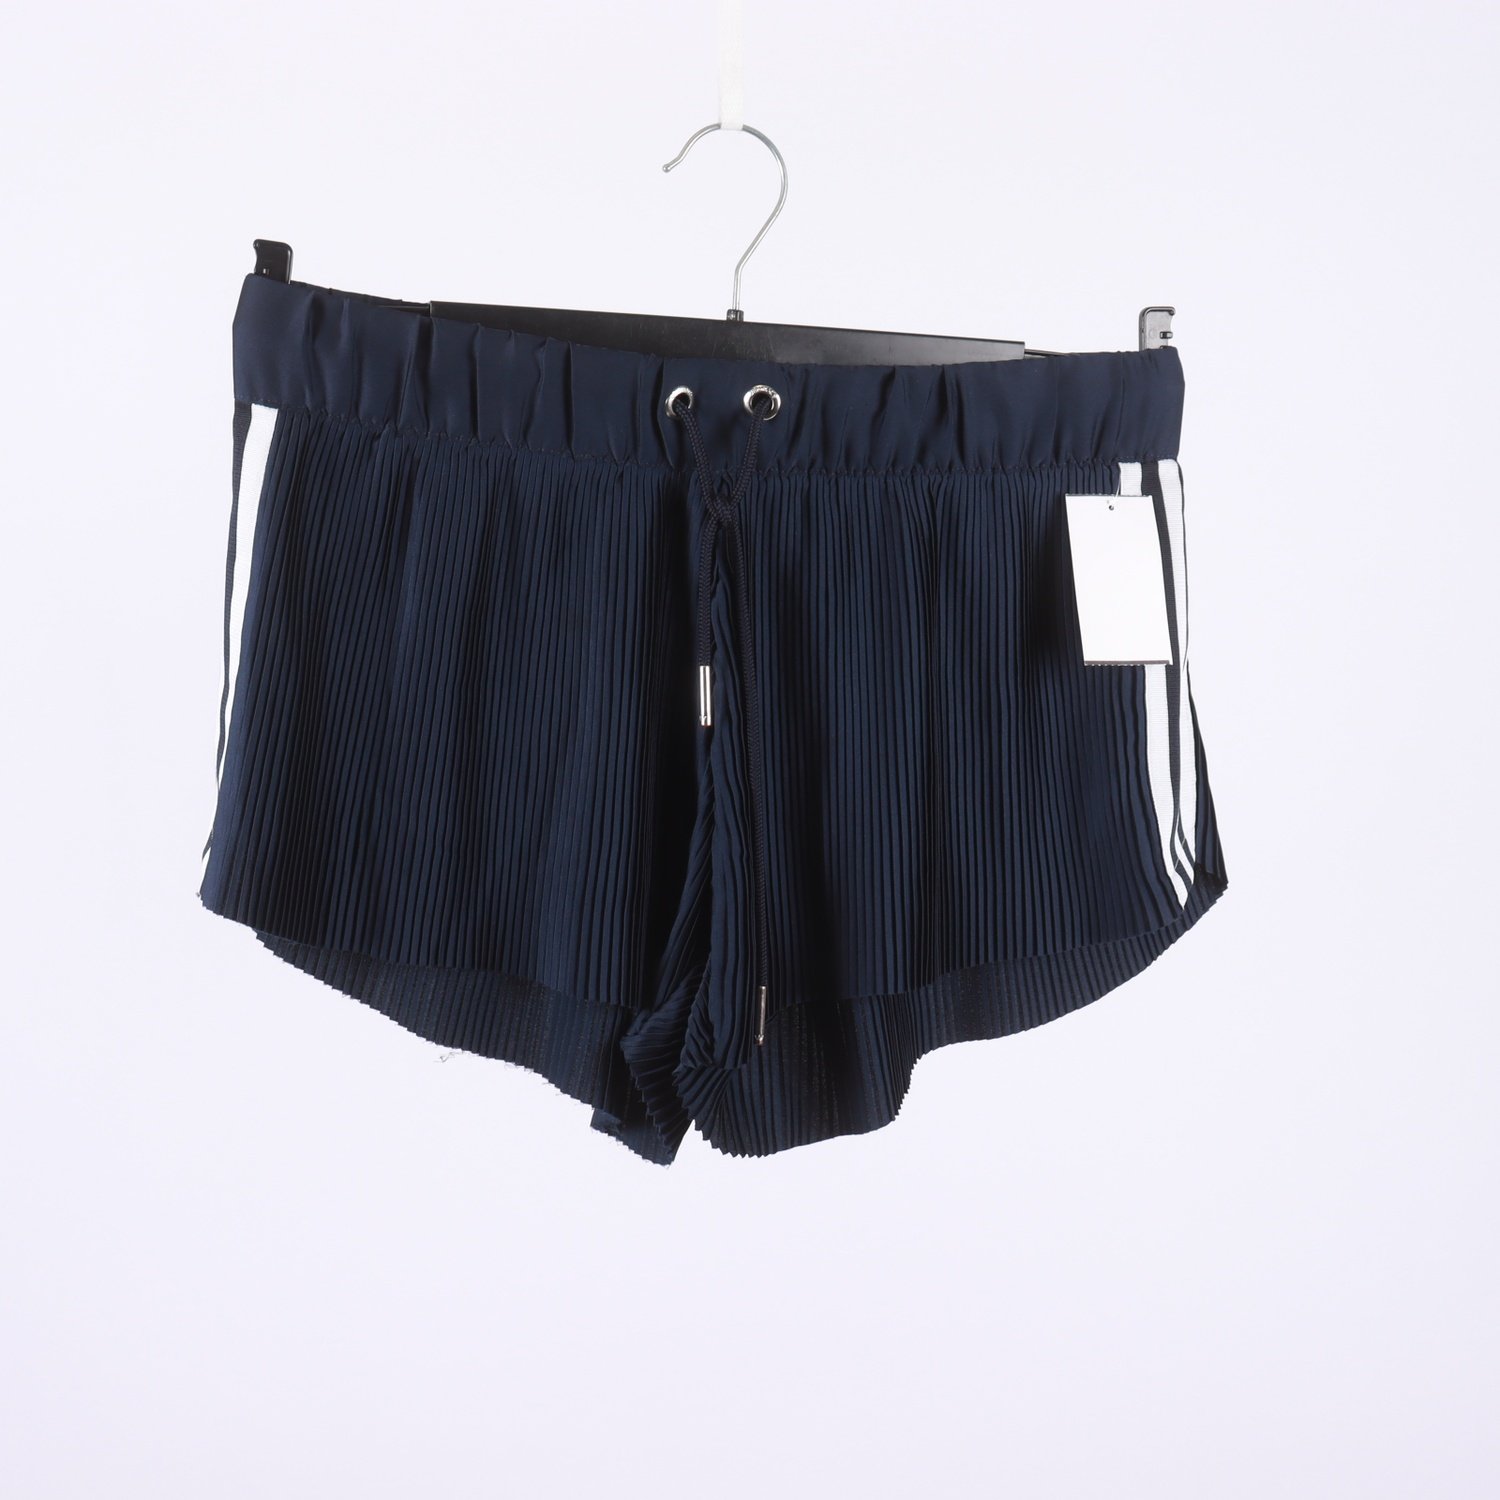 Shorts, Adidas, mörkblå, stl. 34